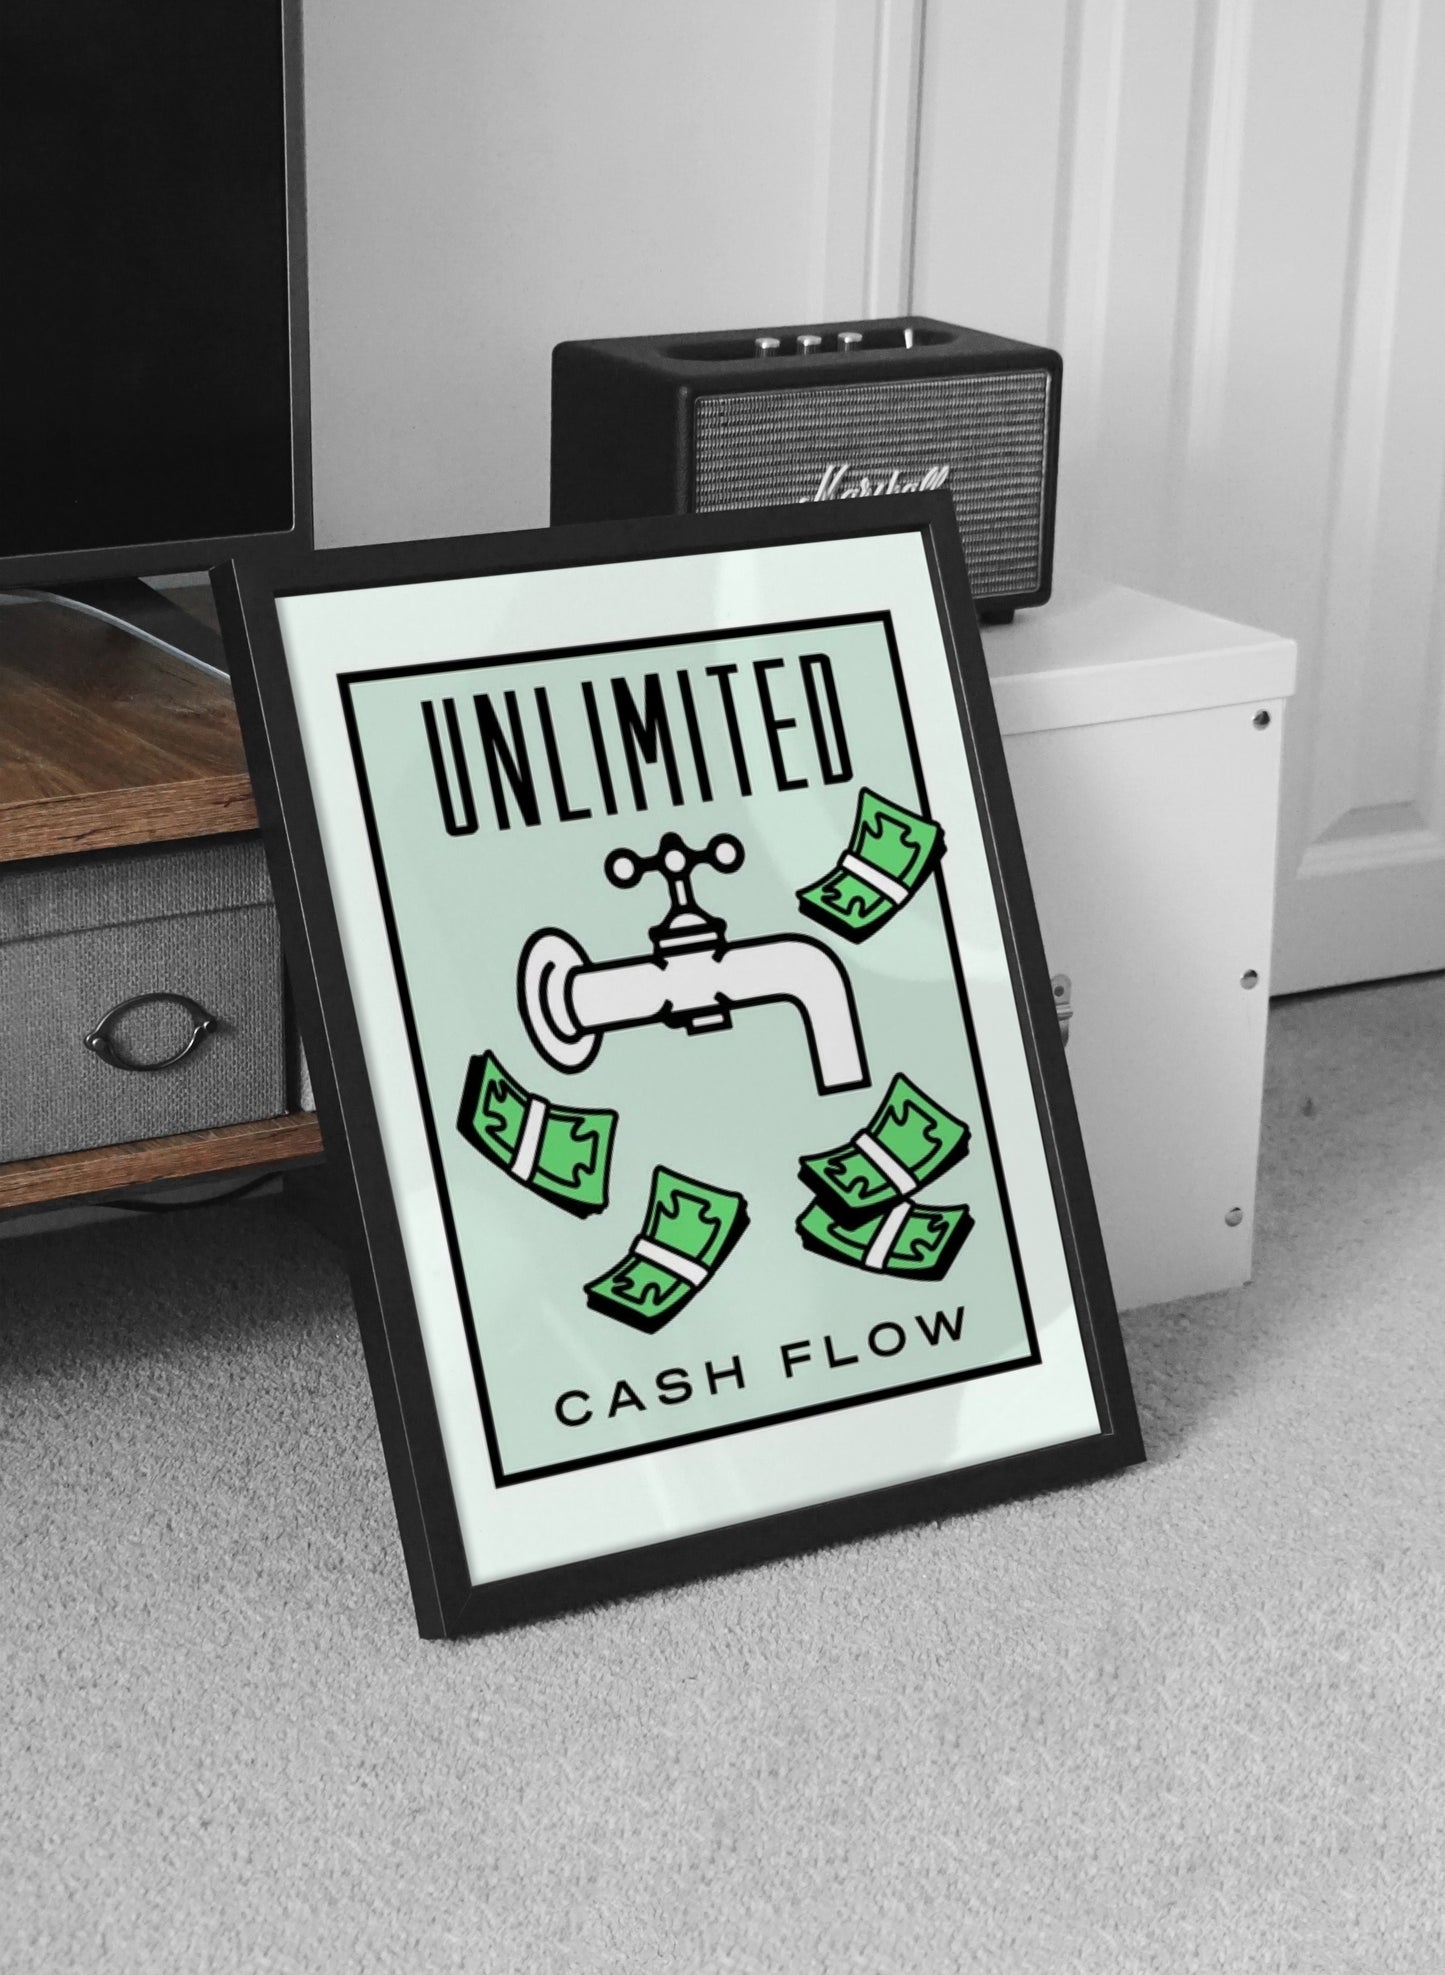 Unlimited Cash Flow